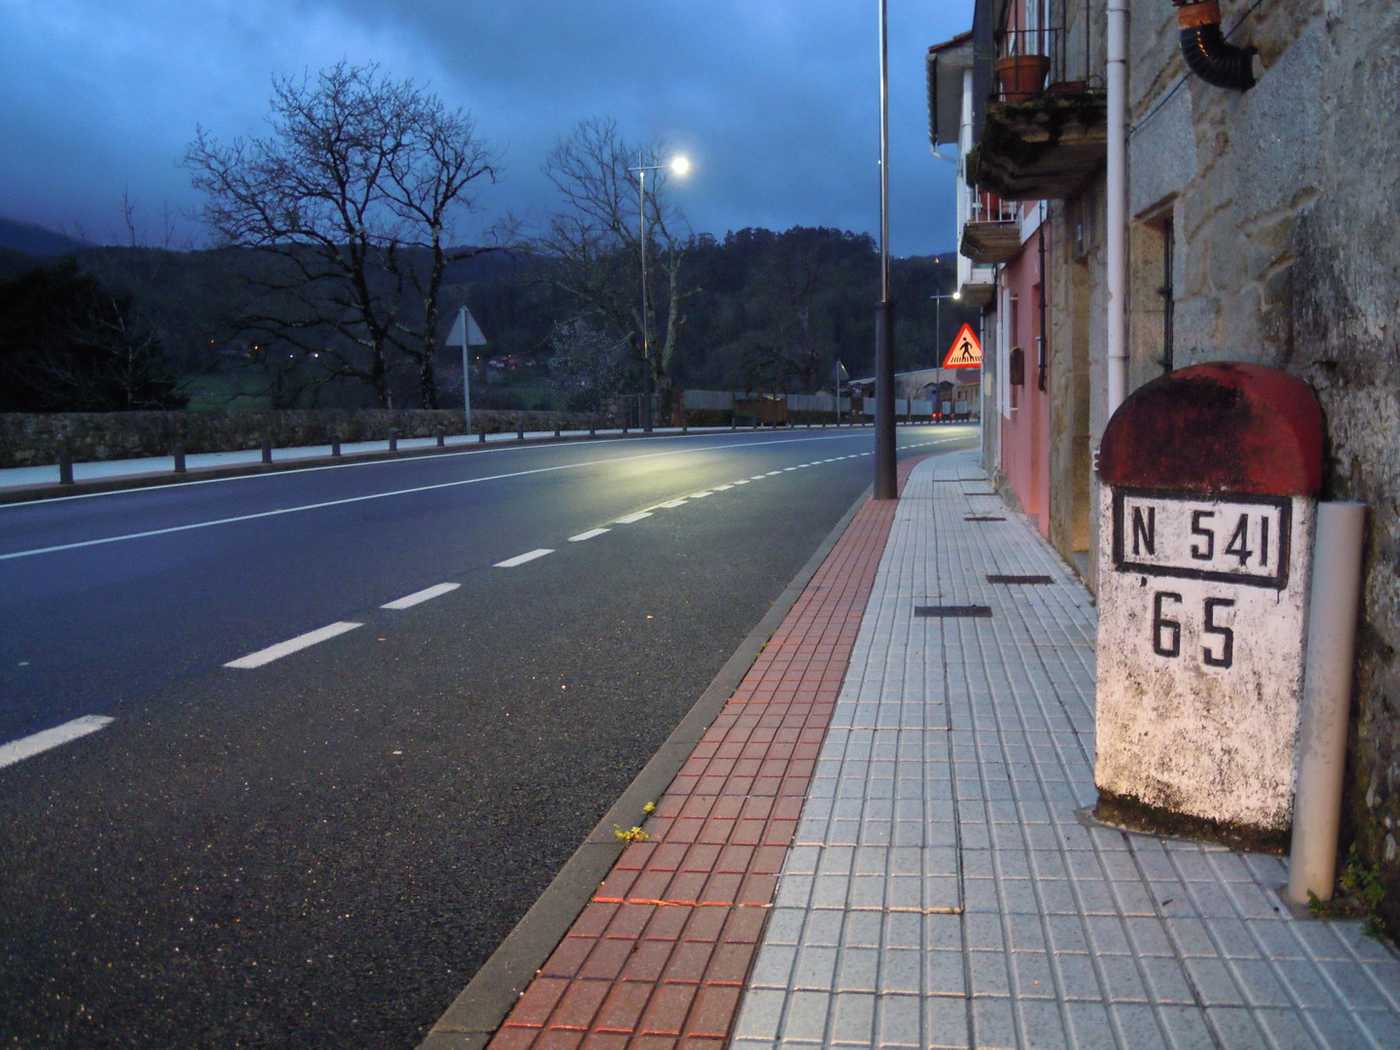 Por cuestións laborais, entre setembro e novembro percorrín bastante a estrada  N-541 , que une  Ourense  e  Pontevedra . Desde sempre…